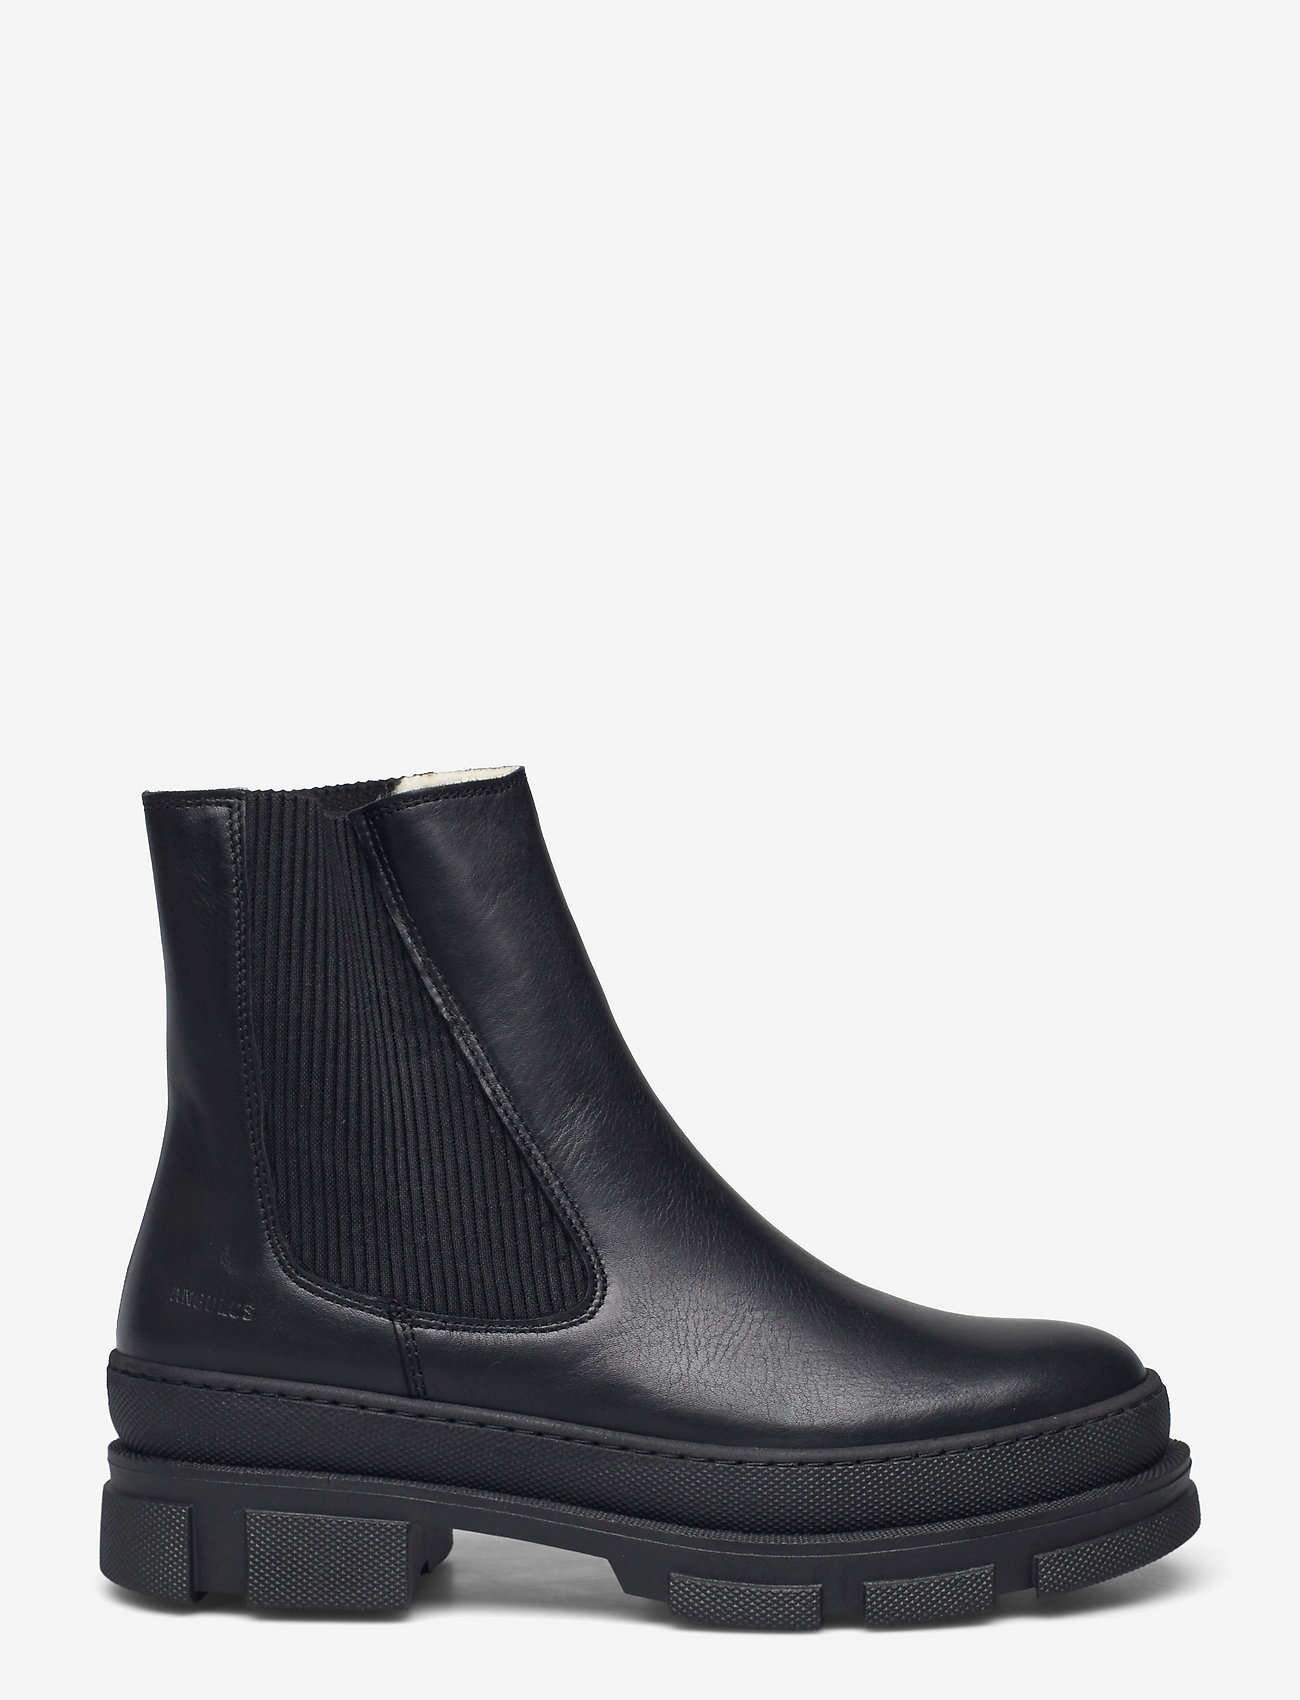 ANGULUS - Boots - flat - chelsea boots - 1604/019 black/black - 1